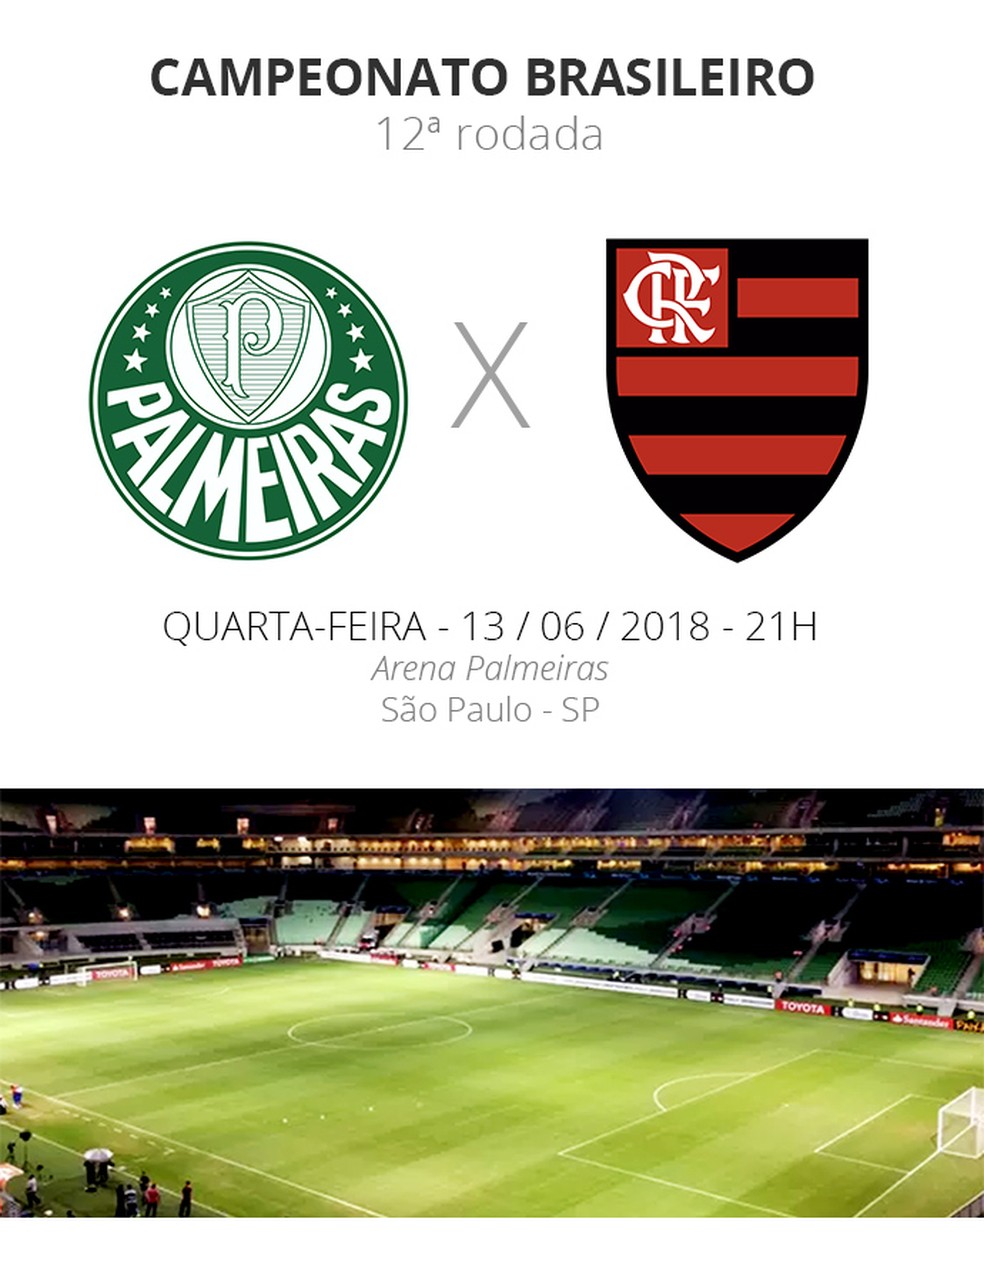 Veja como foi a transmissão da Jovem Pan do jogo entre Flamengo e Palmeiras